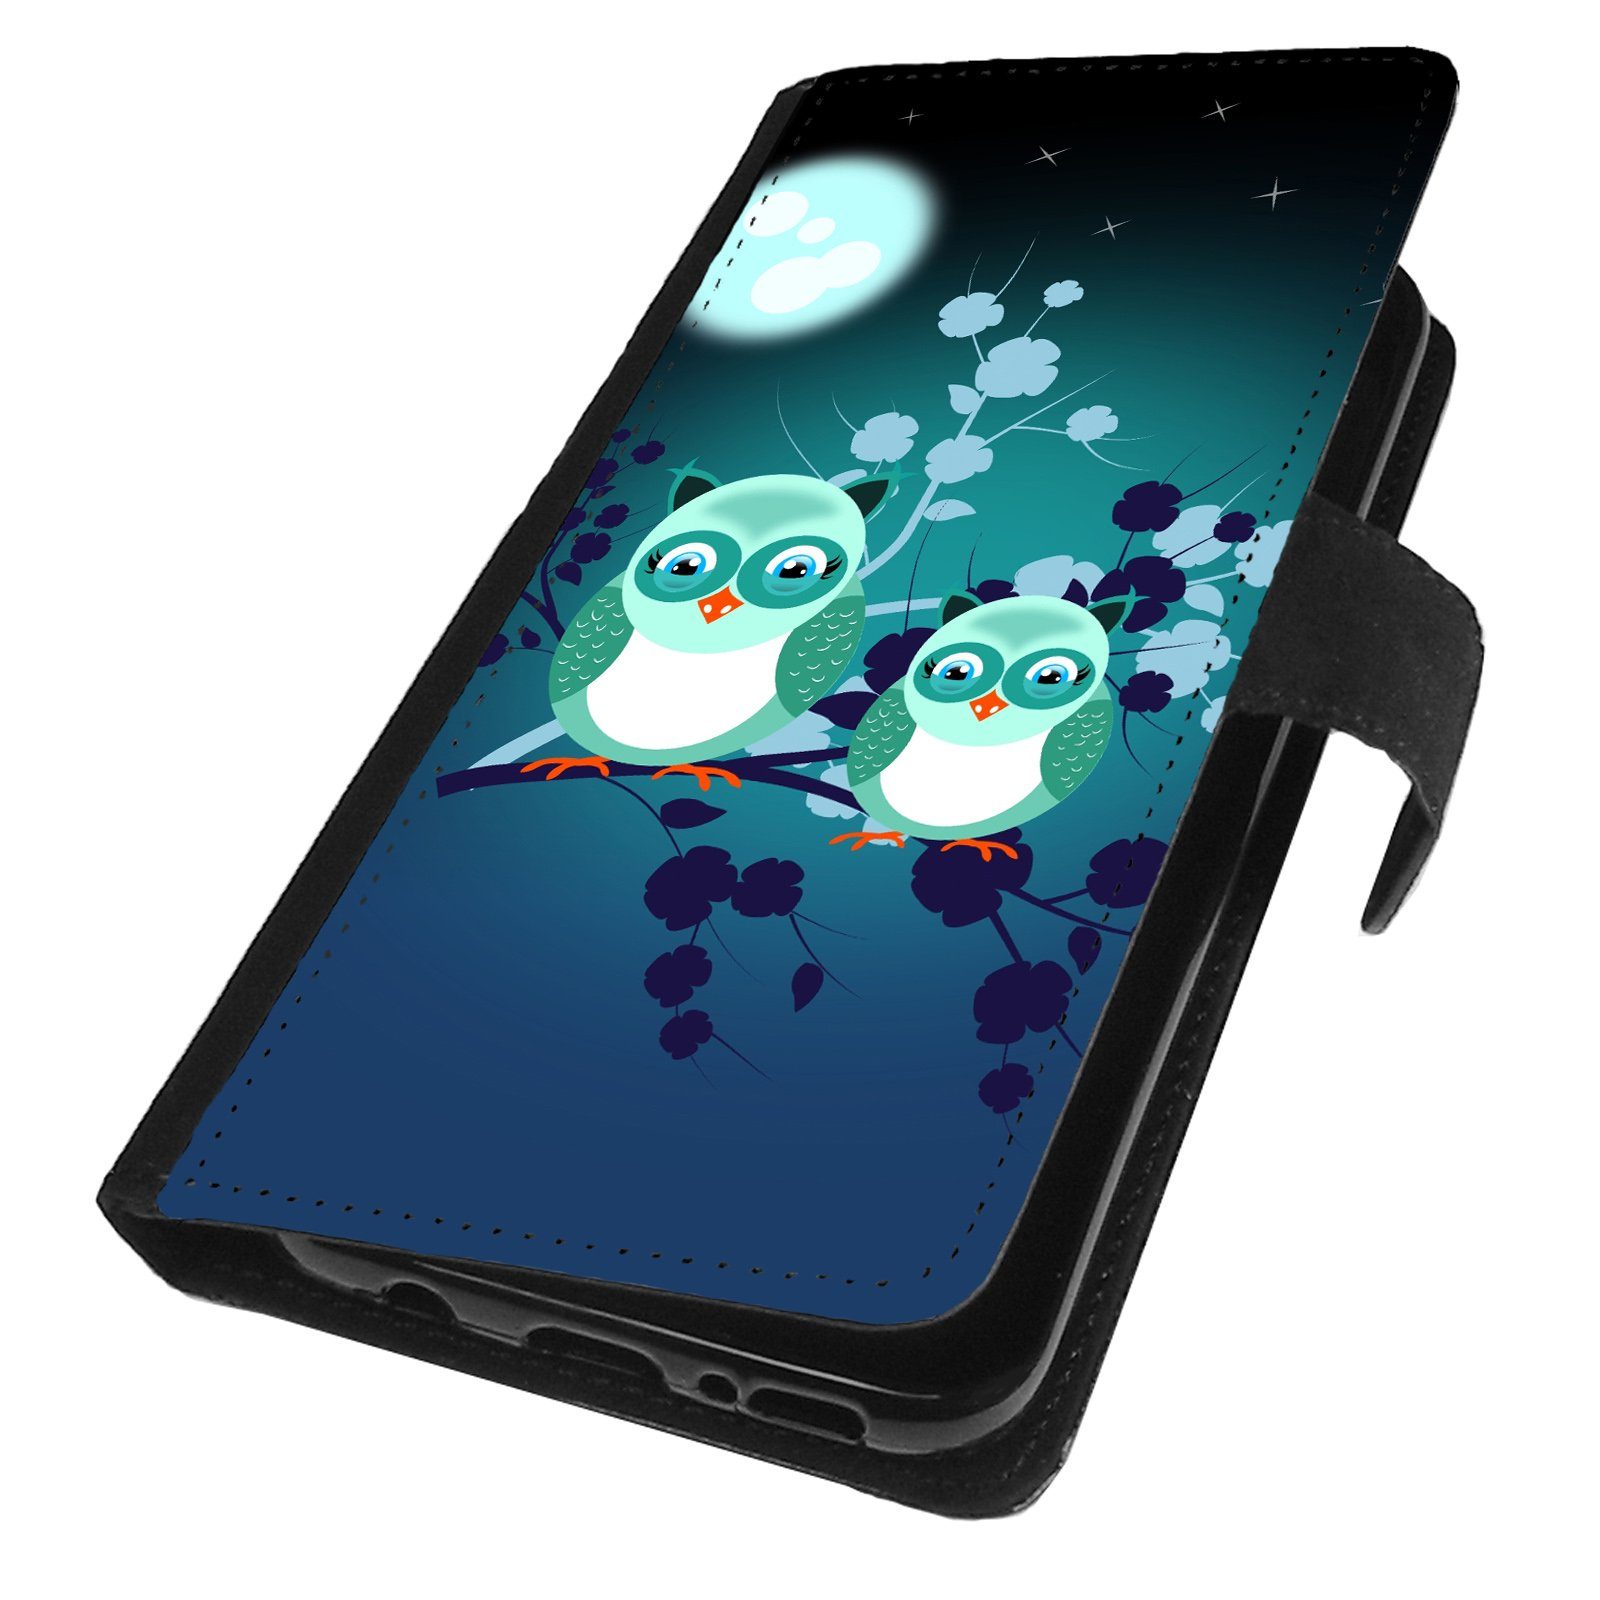 Traumhuelle Handyhülle Für Huawei P30, für Huawei P30 Pro, für Huawei P30  Lite Motiv 42, Eulen Mond Blau Handy Tasche Hülle Flip Case Etui Cover  Silikon